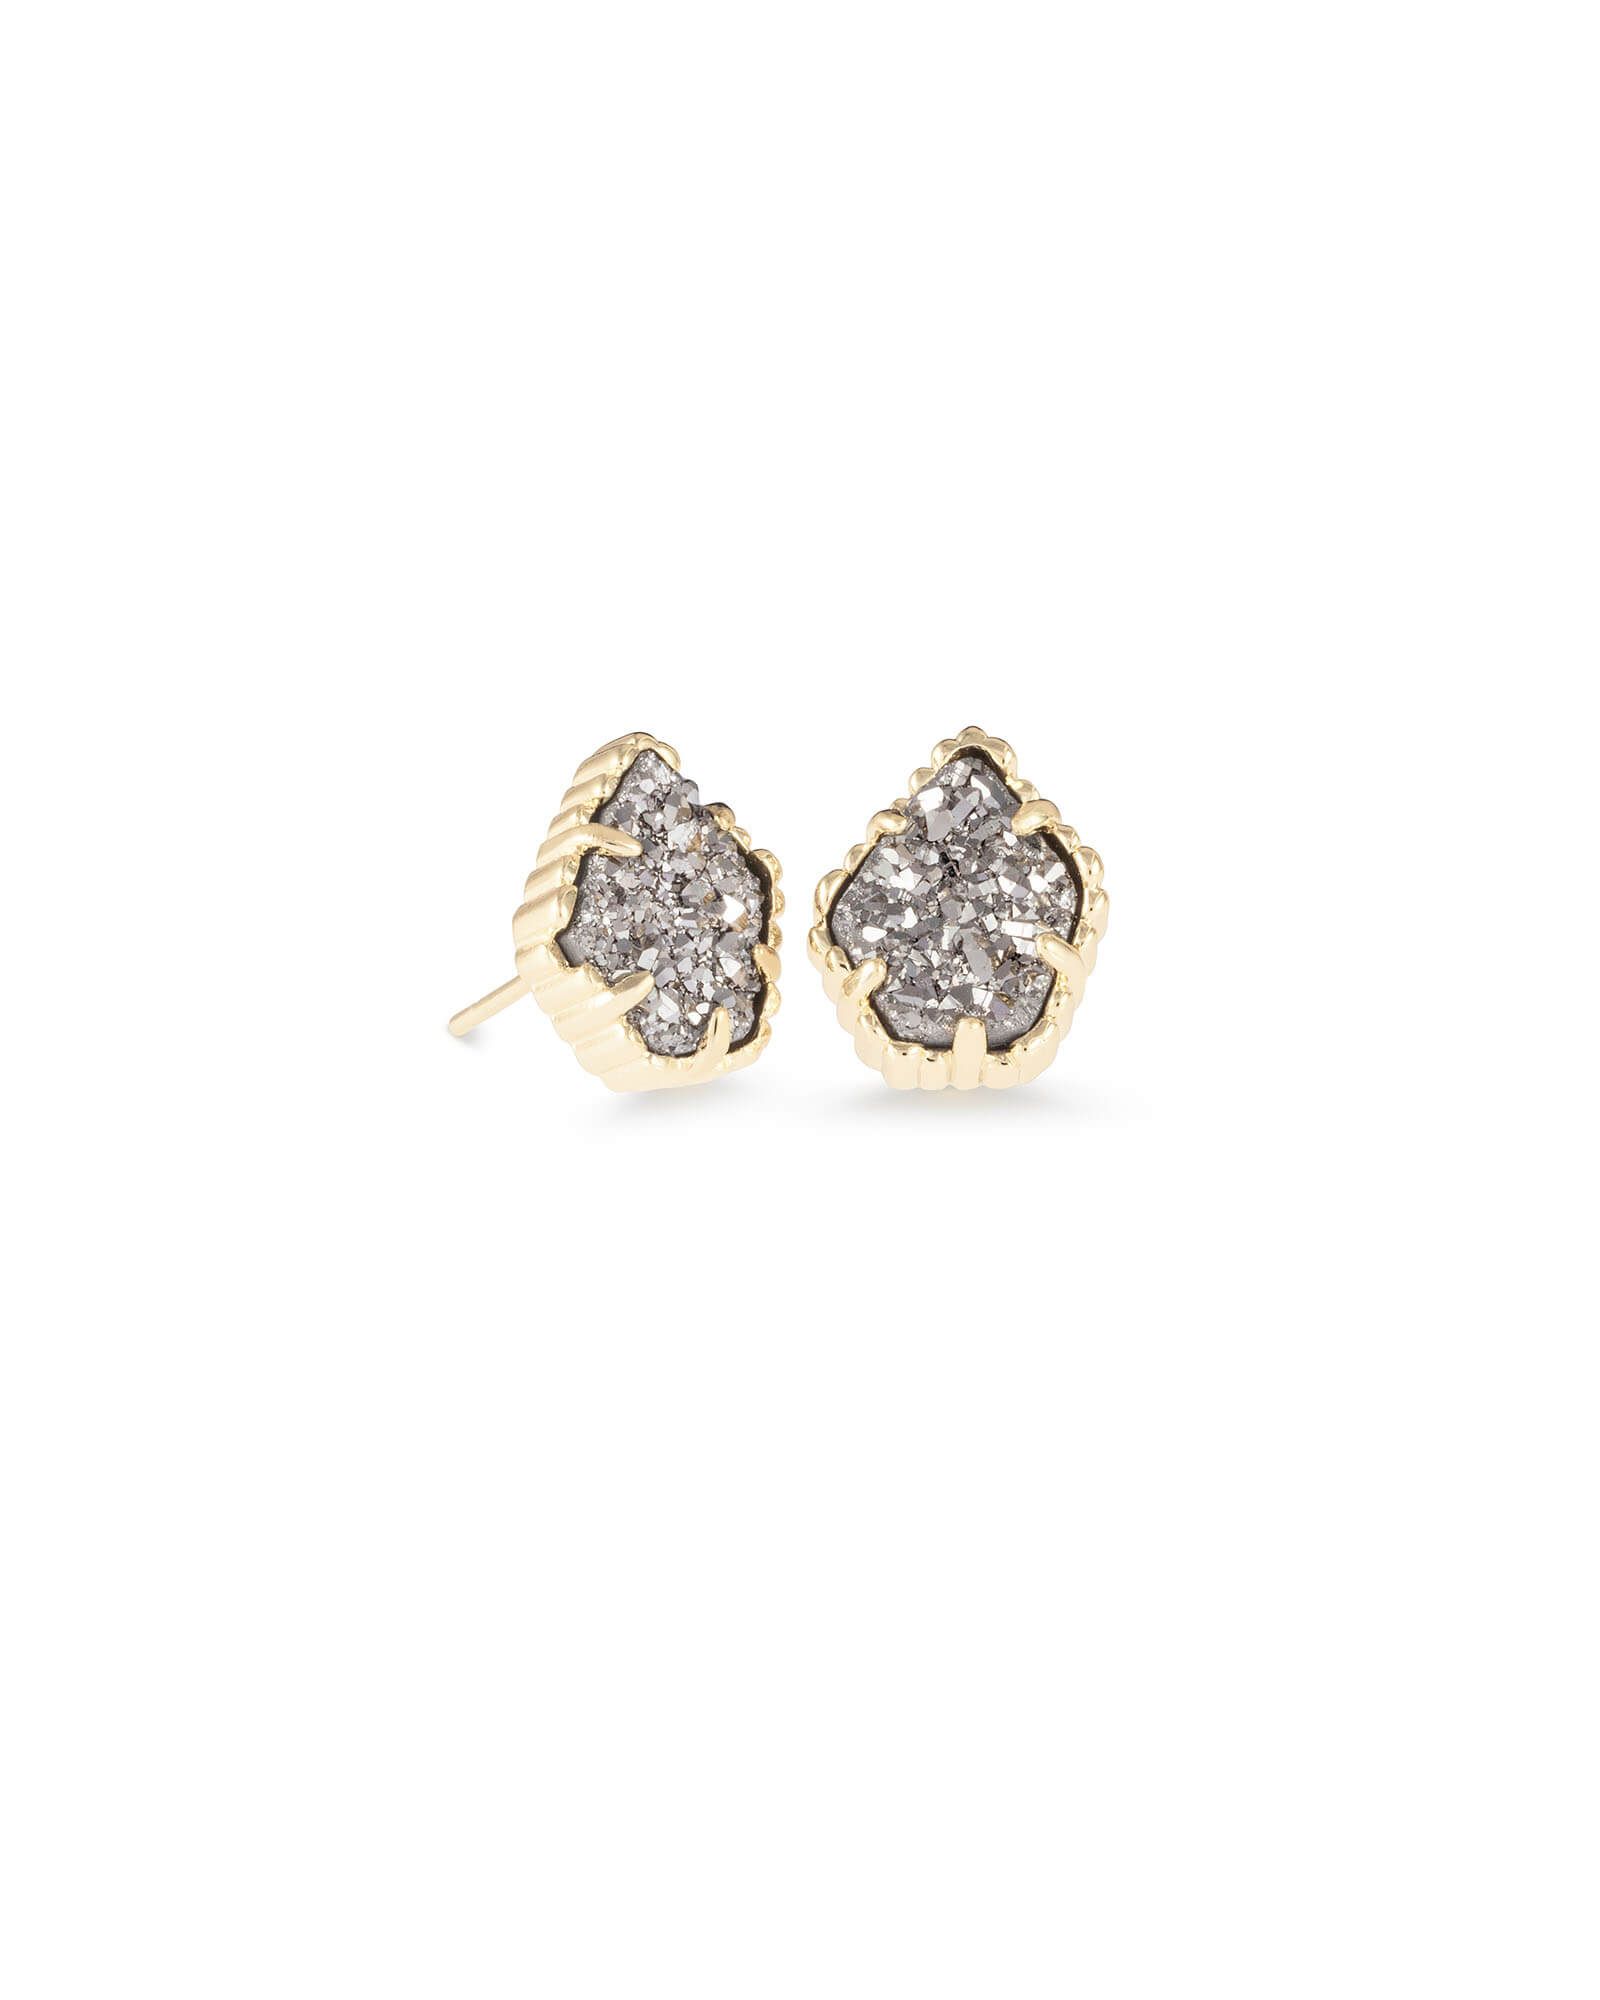 Tessa Gold Stud Earrings in Platinum Drusy | Kendra Scott | Kendra Scott